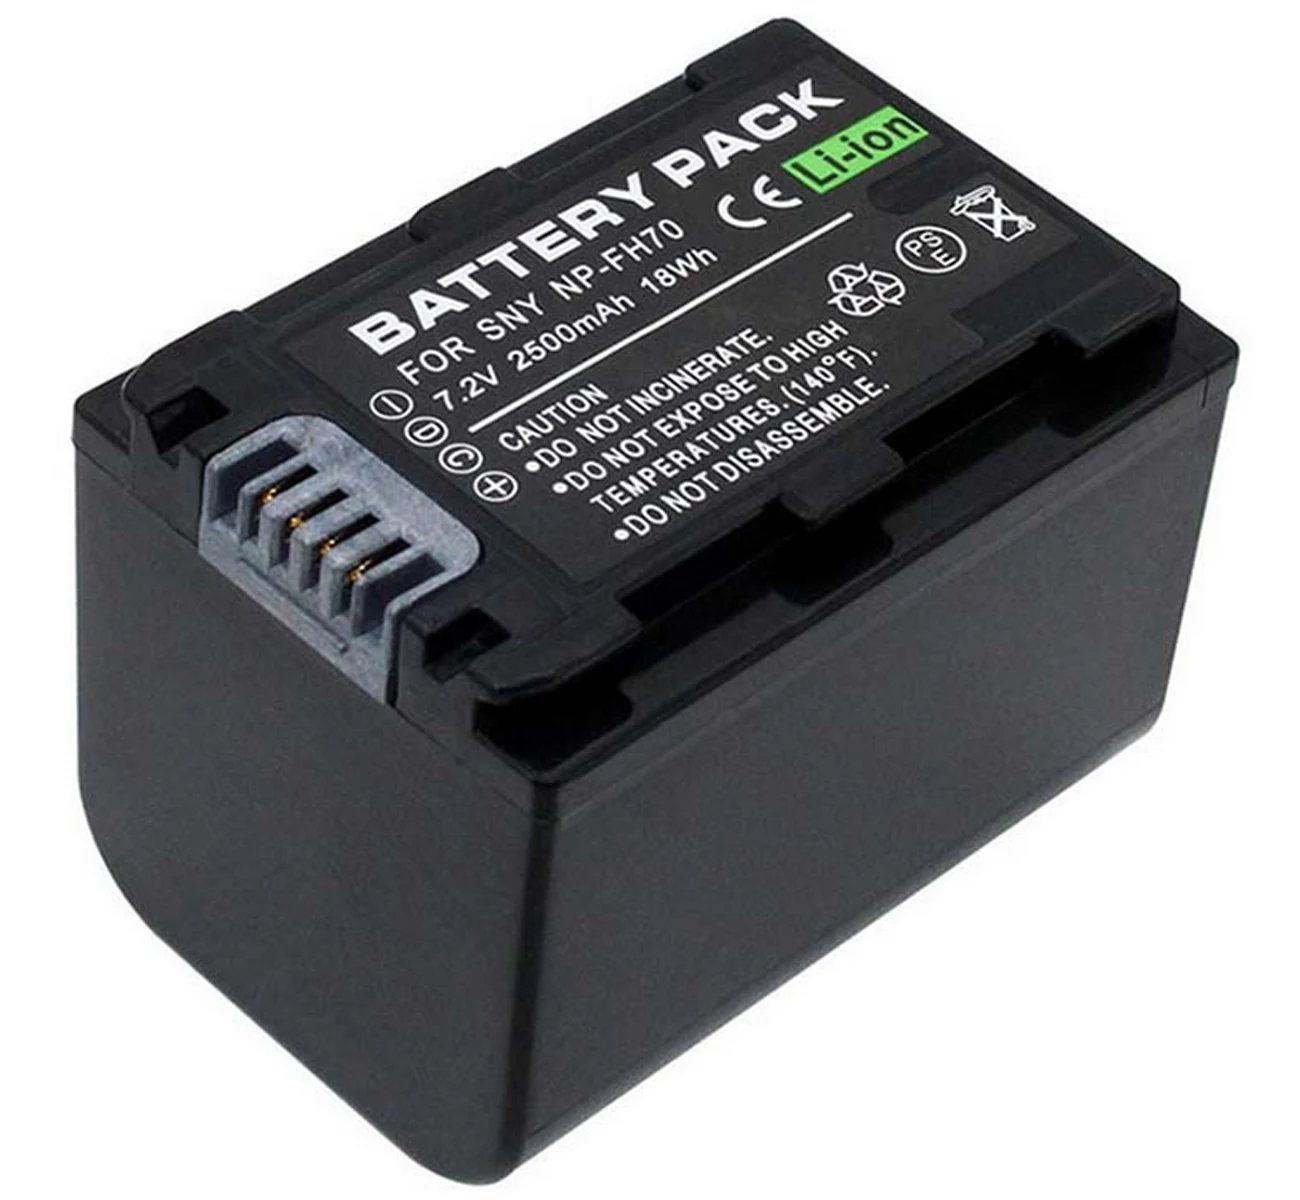 

Battery Pack for Sony DCR-DVD108E, DVD308E, DVD408E, DVD508E, DVD608E, DVD708E, DCR-DVD808E, DCR-DVD908E DVD Handycam Camcorder